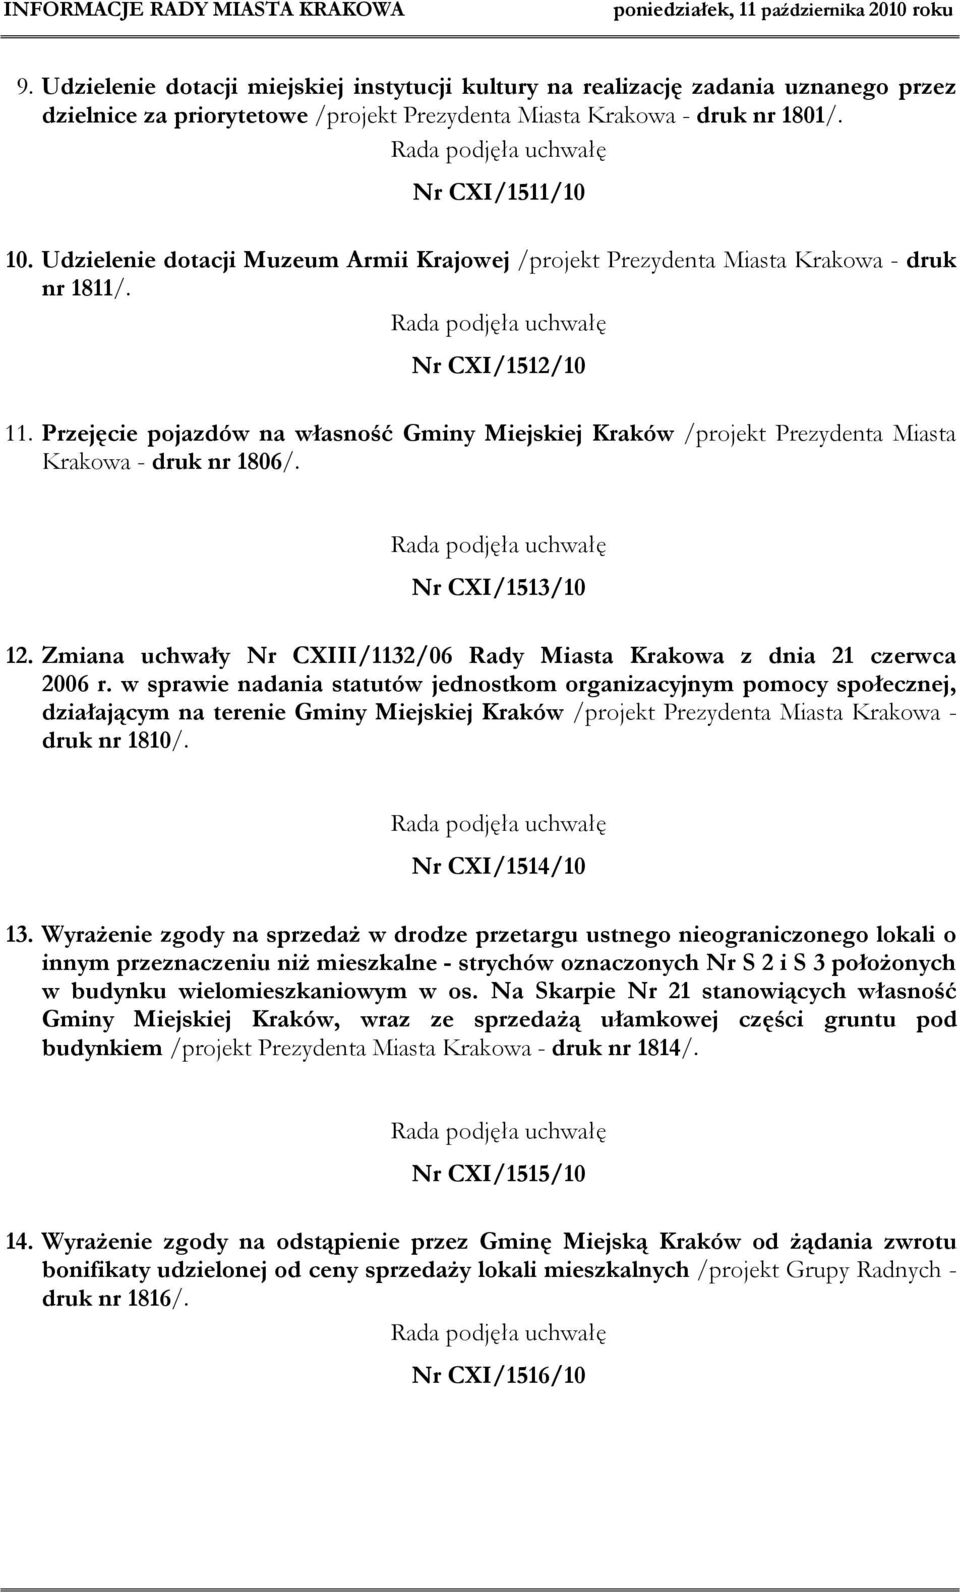 Przejęcie pojazdów na własność Gminy Miejskiej Kraków /projekt Prezydenta Miasta Krakowa - druk nr 1806/. Nr CXI/1513/10 12.